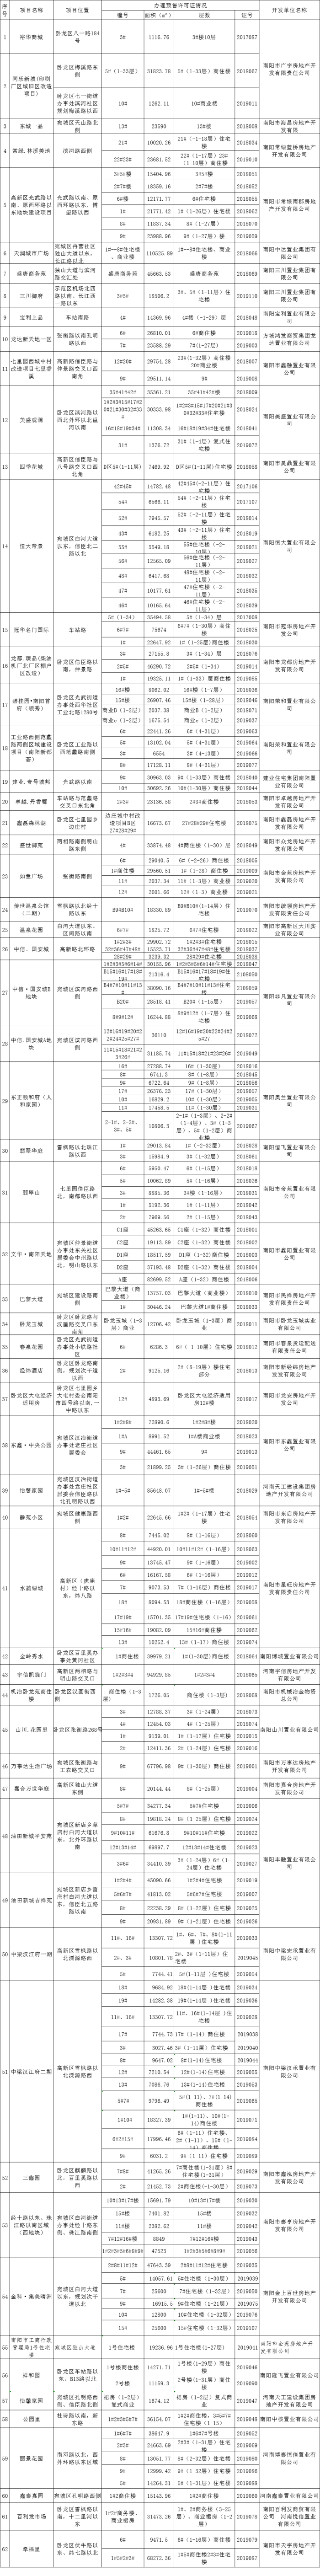 南阳市中心城区已取得预售证项目信息2018年1月-2019年12月25日